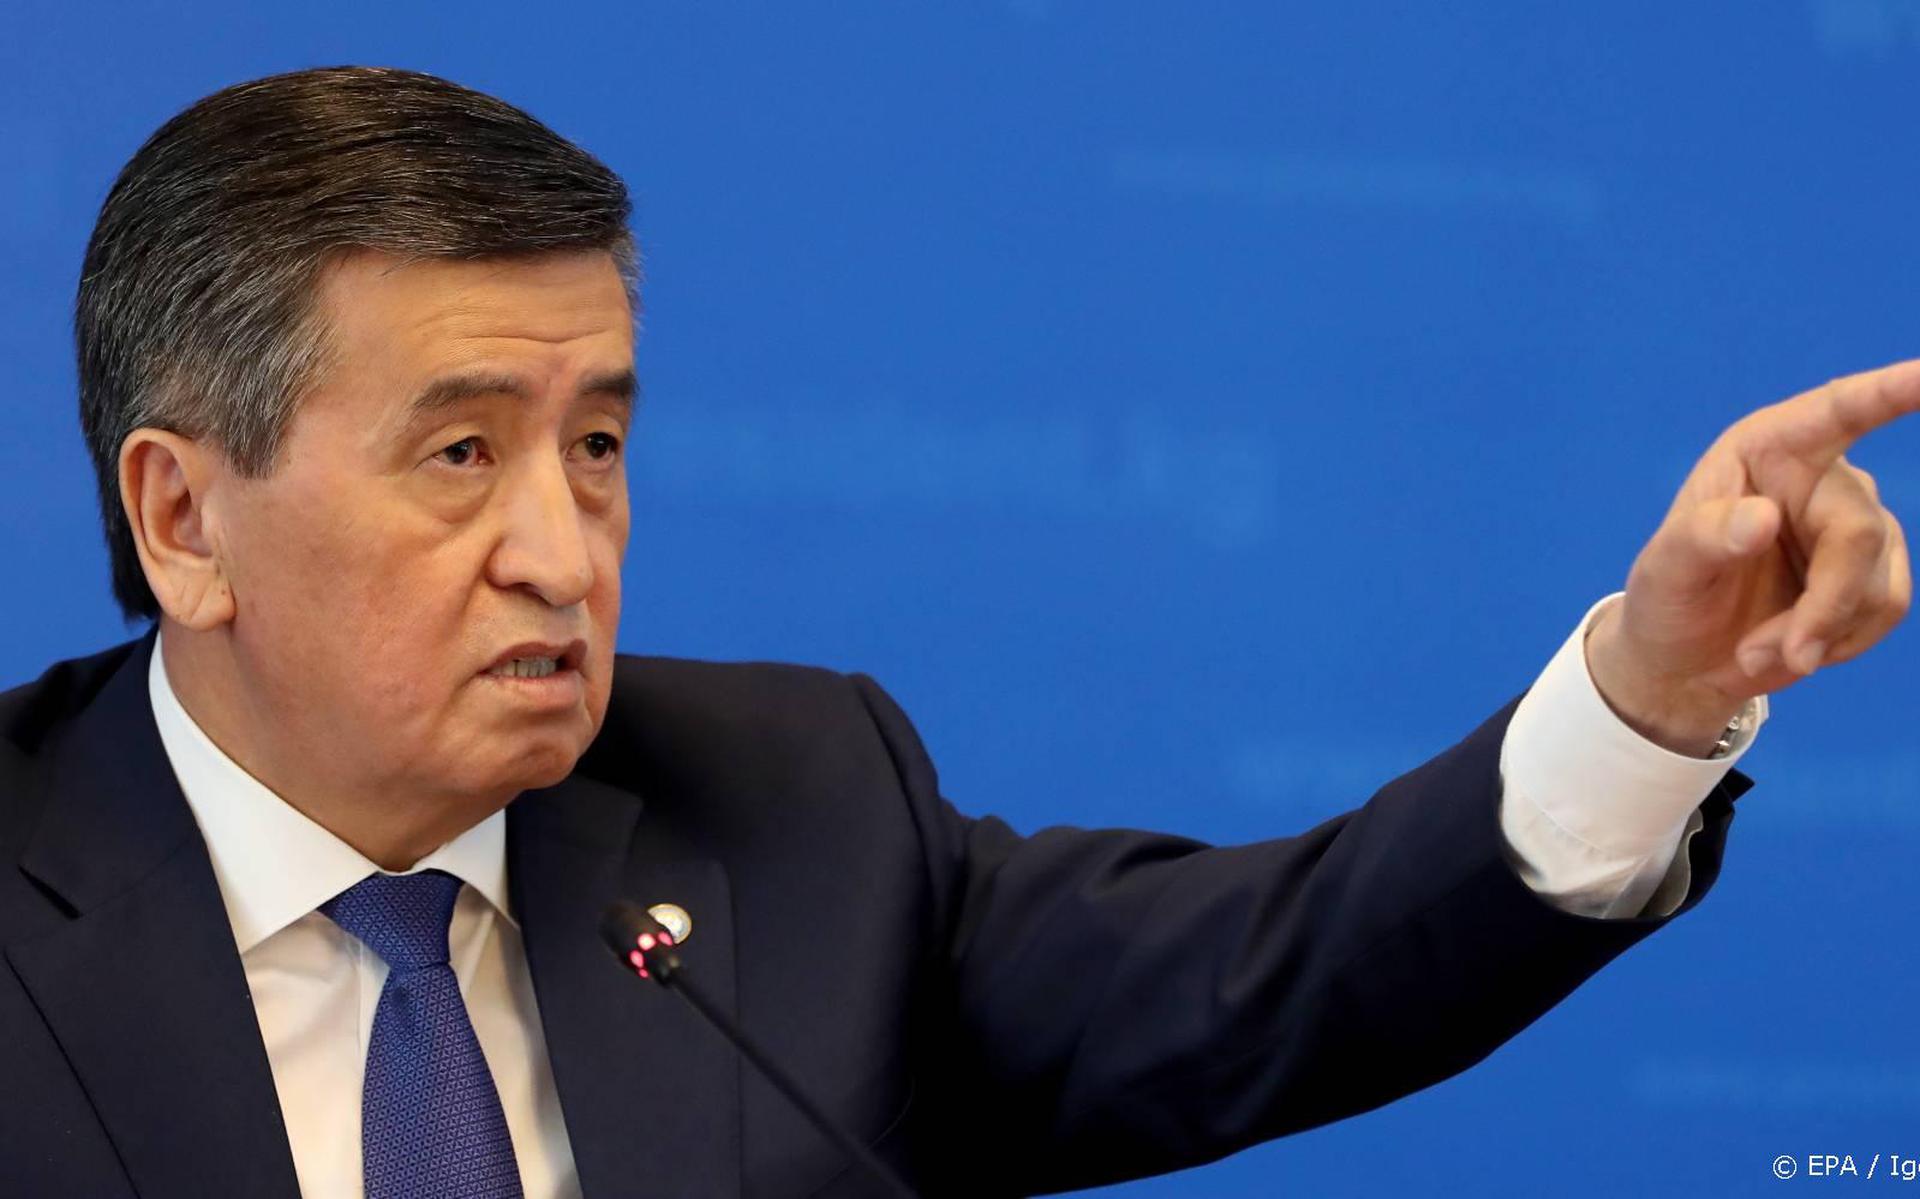 President Kirgizië rept van illegale machtsovername door betogers